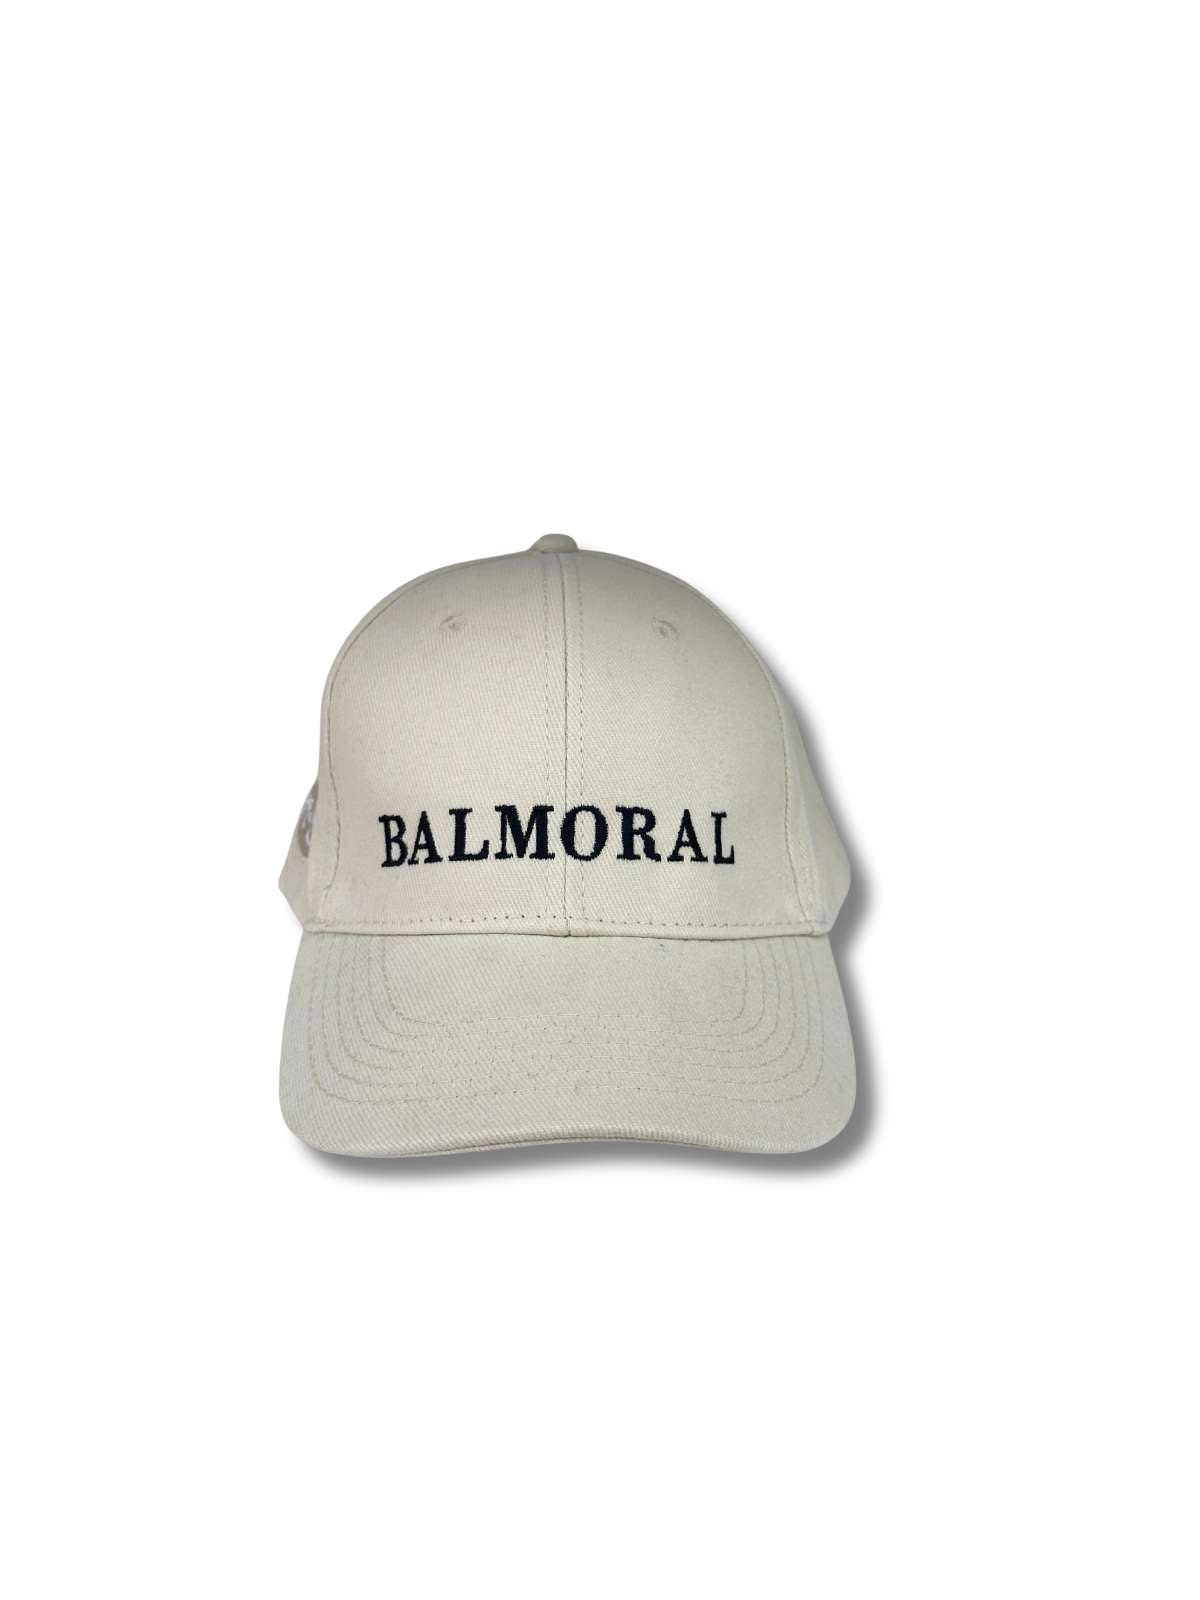 Balmoral Unisex Cotton Cap - Cream